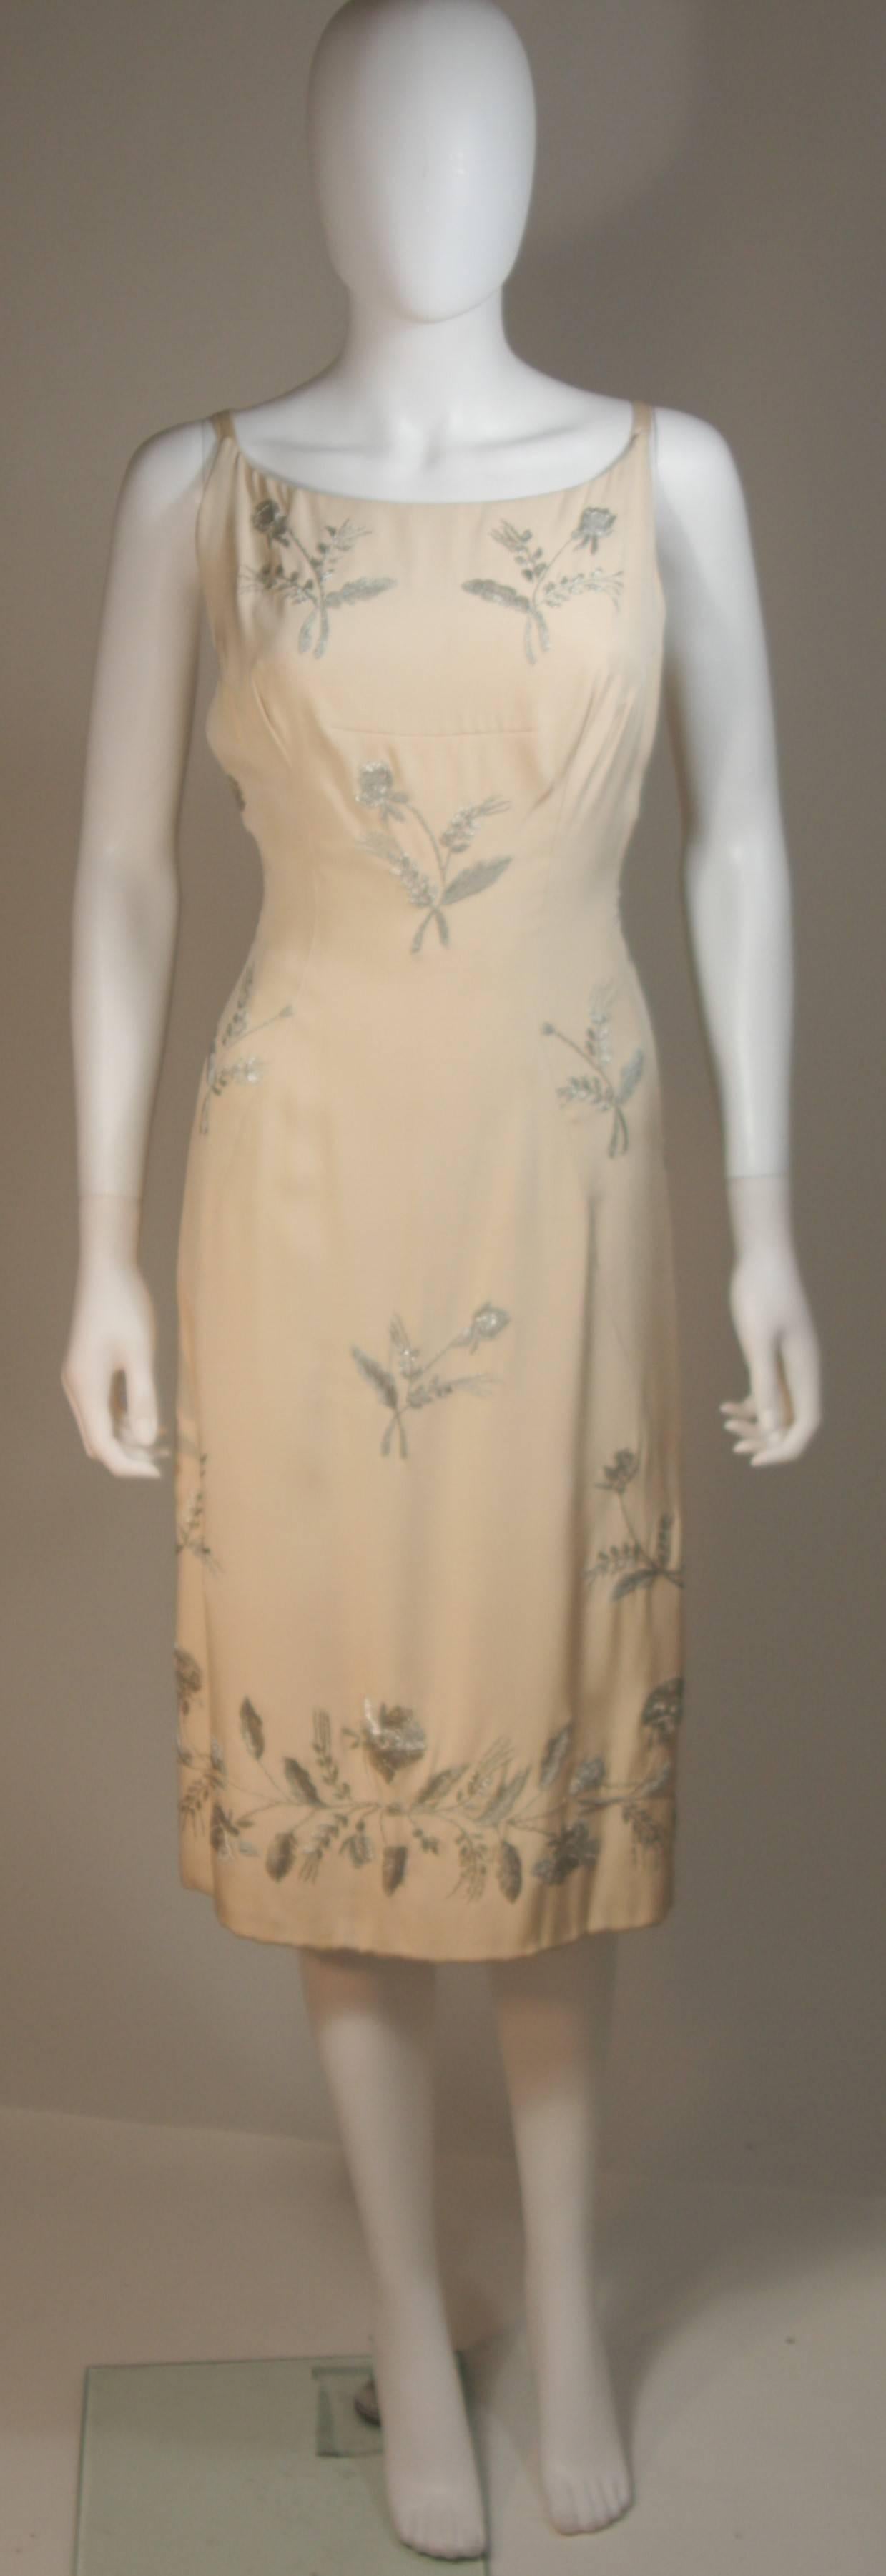 Dieser Martier Raymond  das Kleid ist aus elfenbeinfarbener Seide gefertigt und mit silbernen Metallblumenapplikationen versehen. Es hat einen Reißverschluss und Prinzessinnenabnäher. In ausgezeichnetem Vintage-Zustand. Hergestellt in Italien.

 